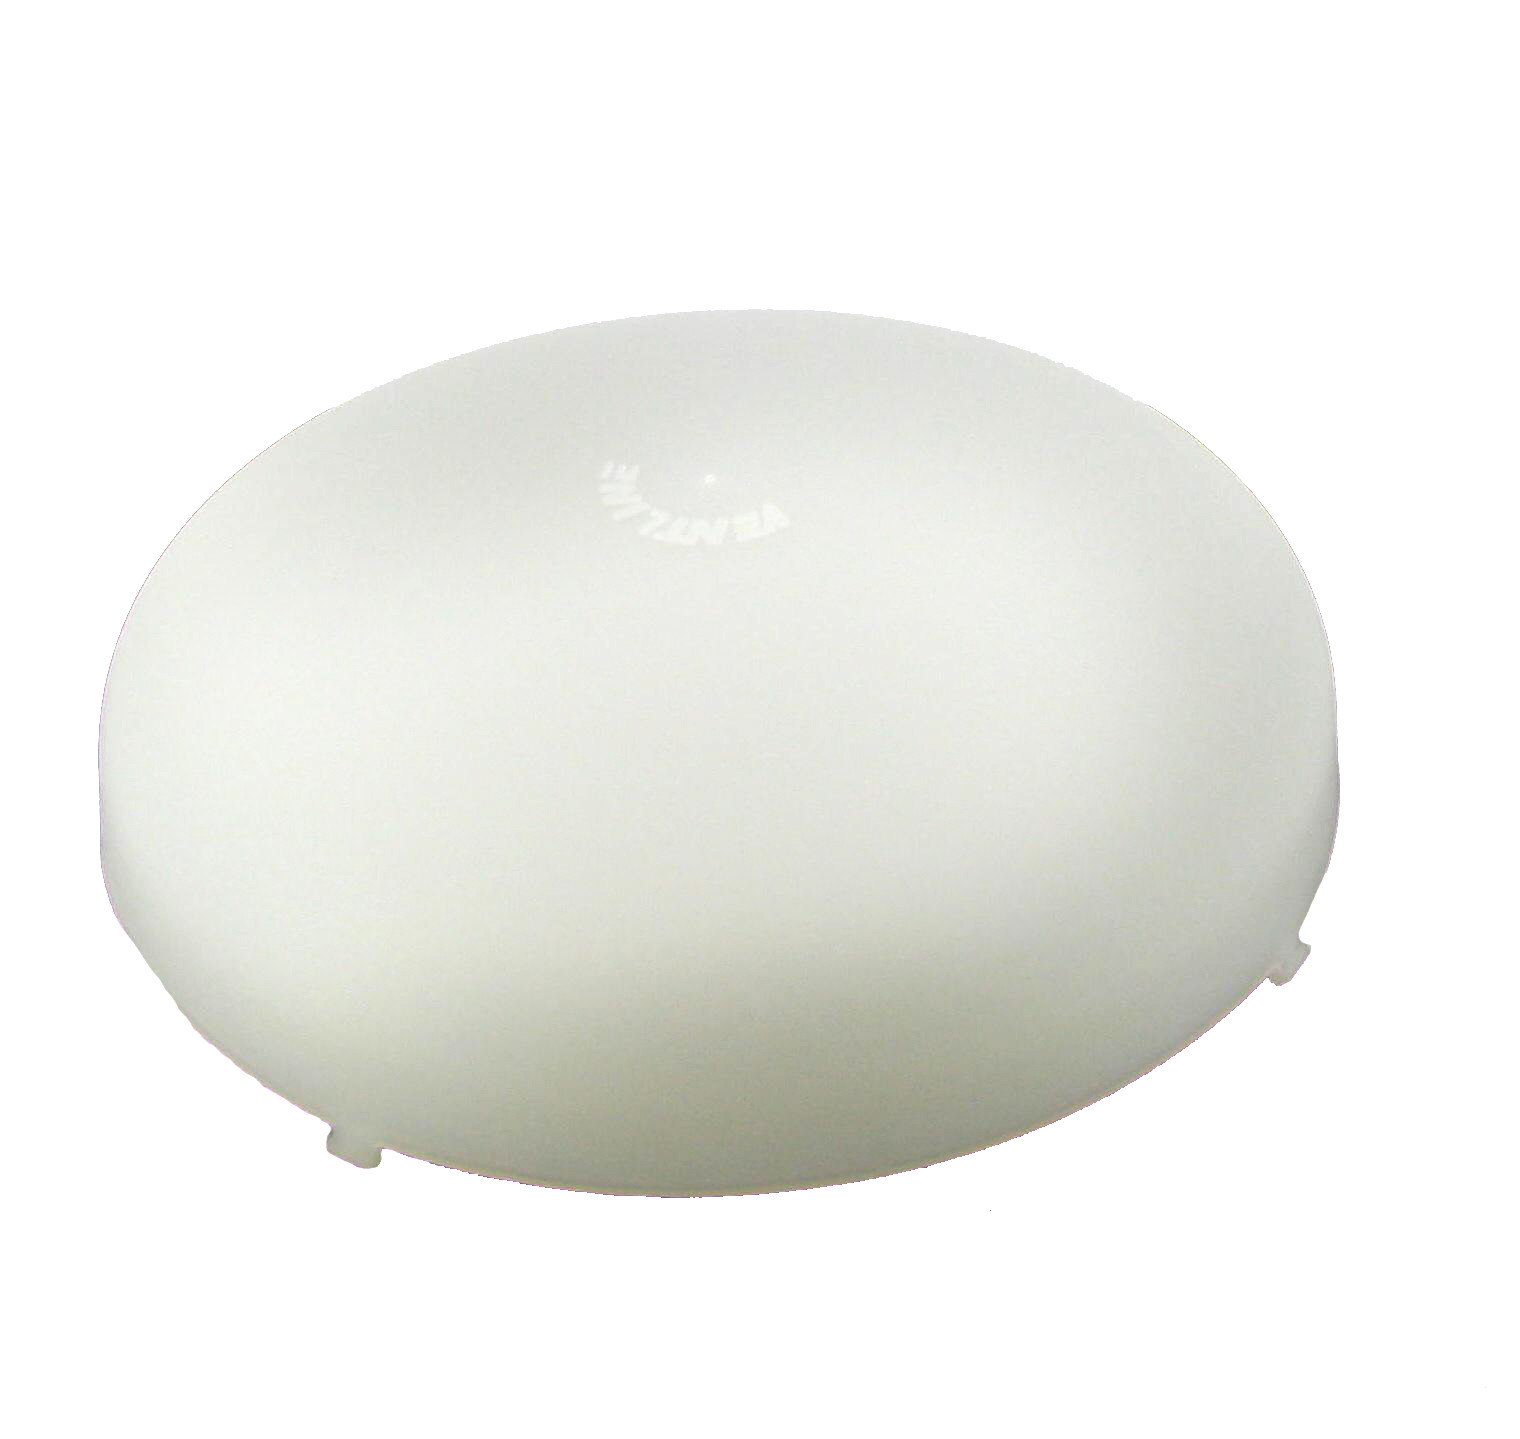 V-097B Exhaust Fan Lens Cover, Plastic, White, For: #V-027 Exhaust Fan